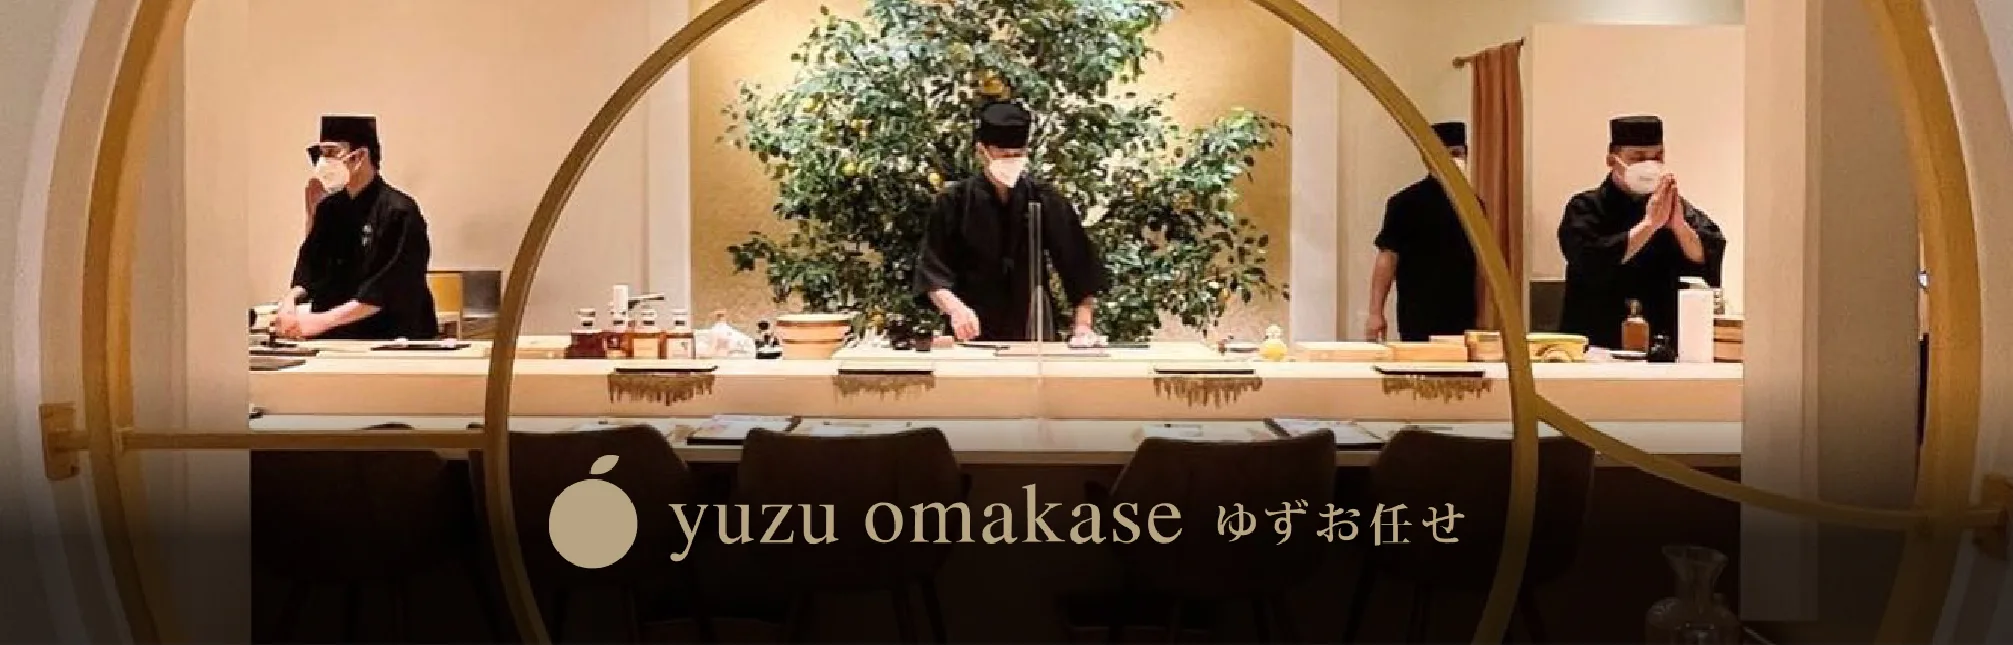 Omakase Luxury Dining